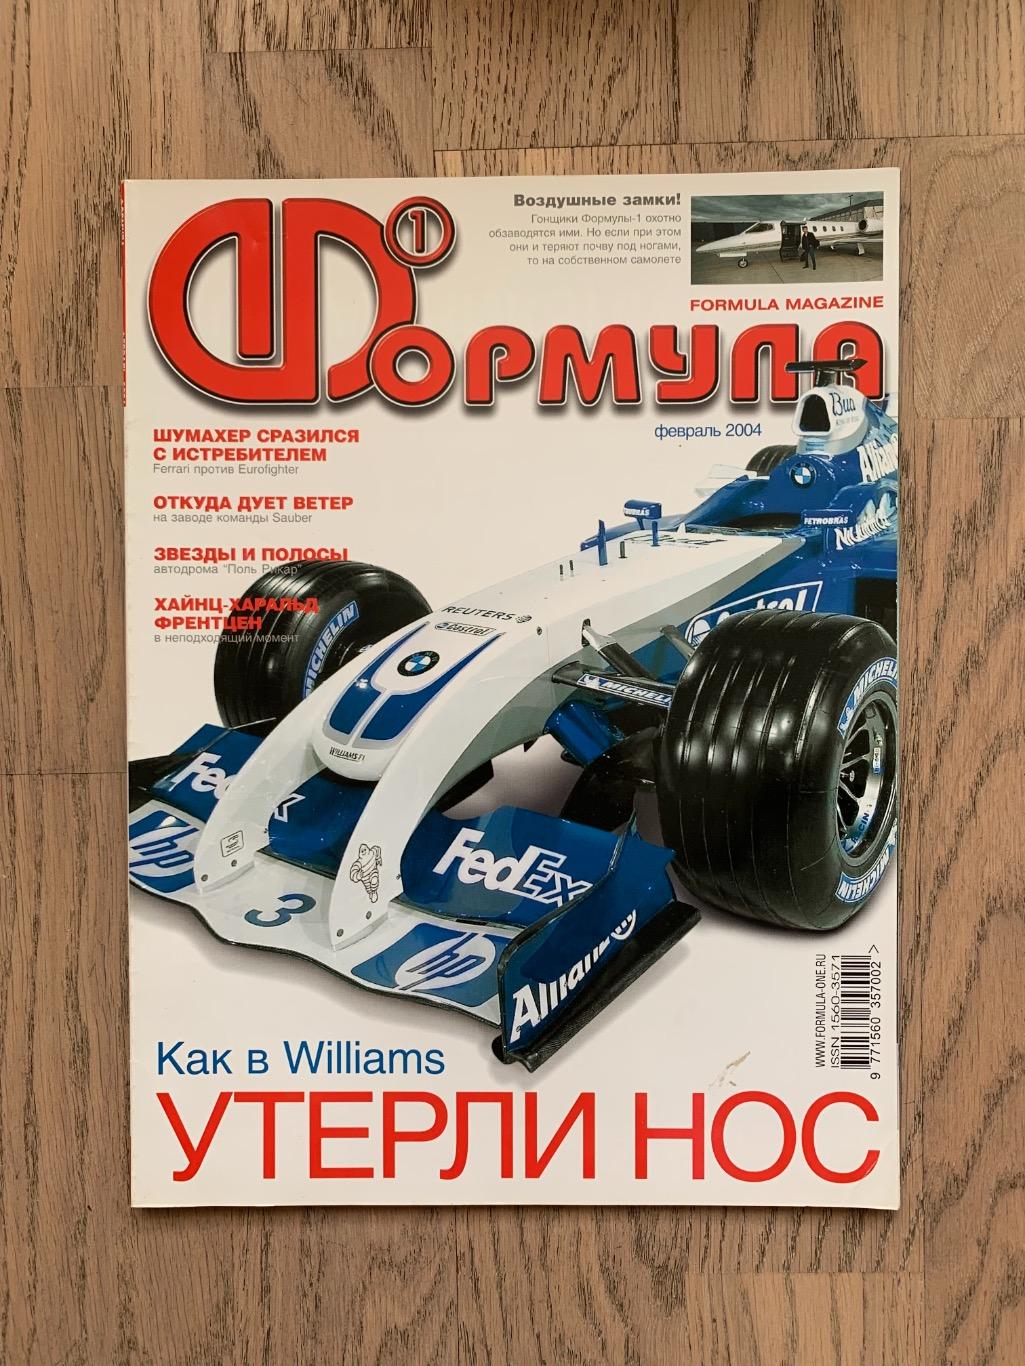 Журнал Формула 1 (Formula Magazine) / февраль 2004